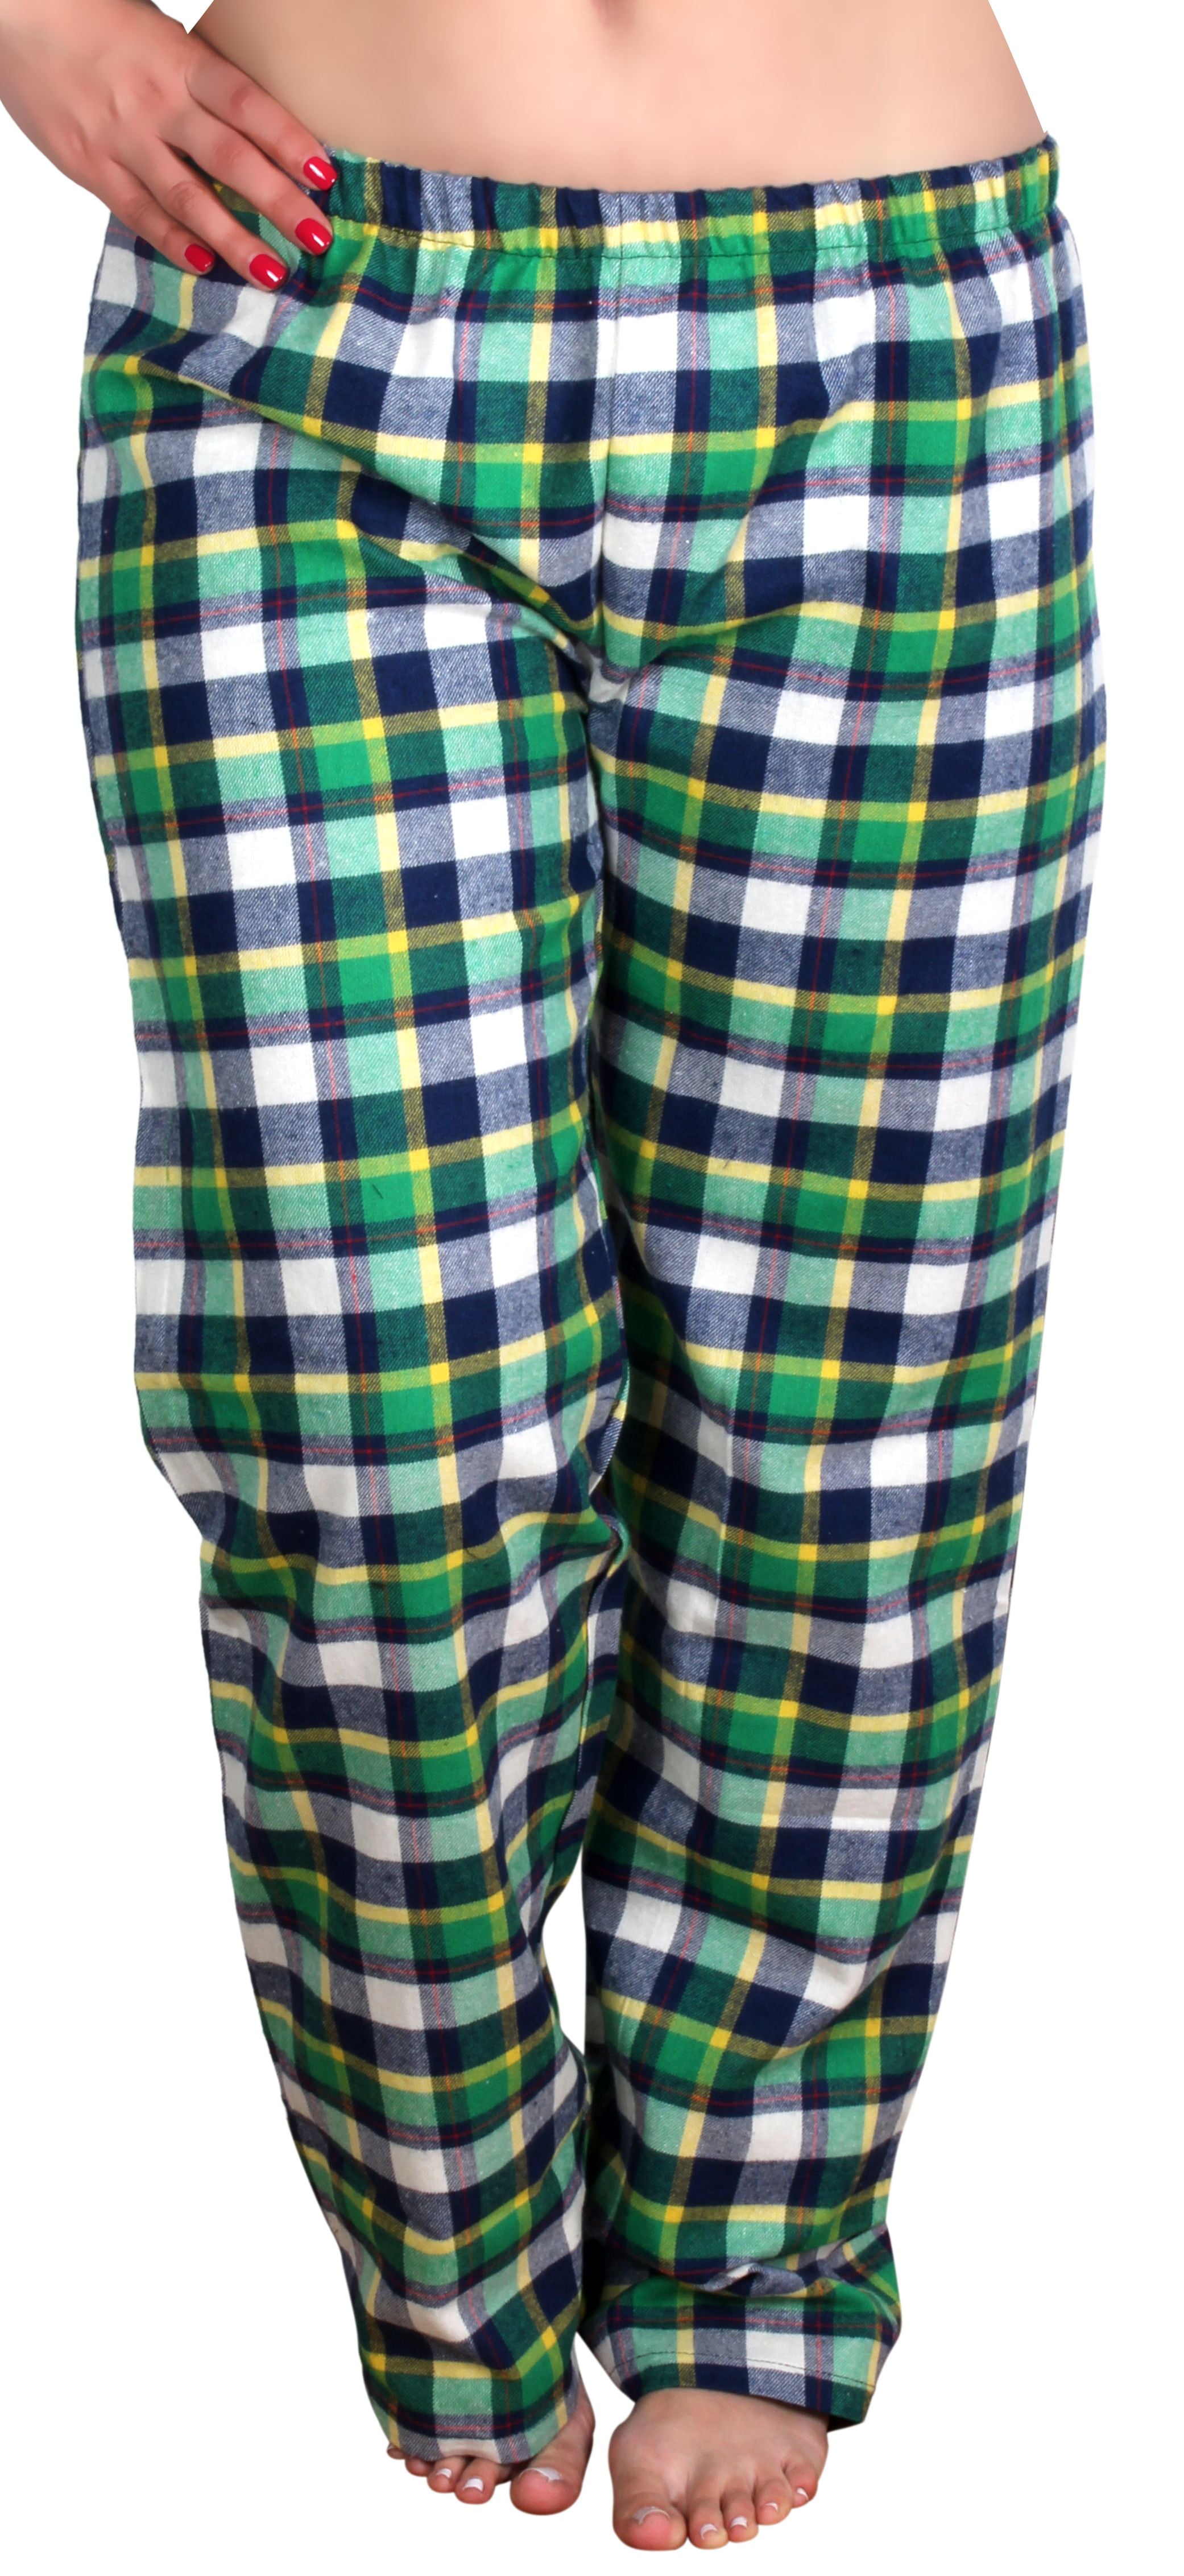 Enimay Women's Cotton Flannel Plaid Pajama Pants LEP-10 Size M ...